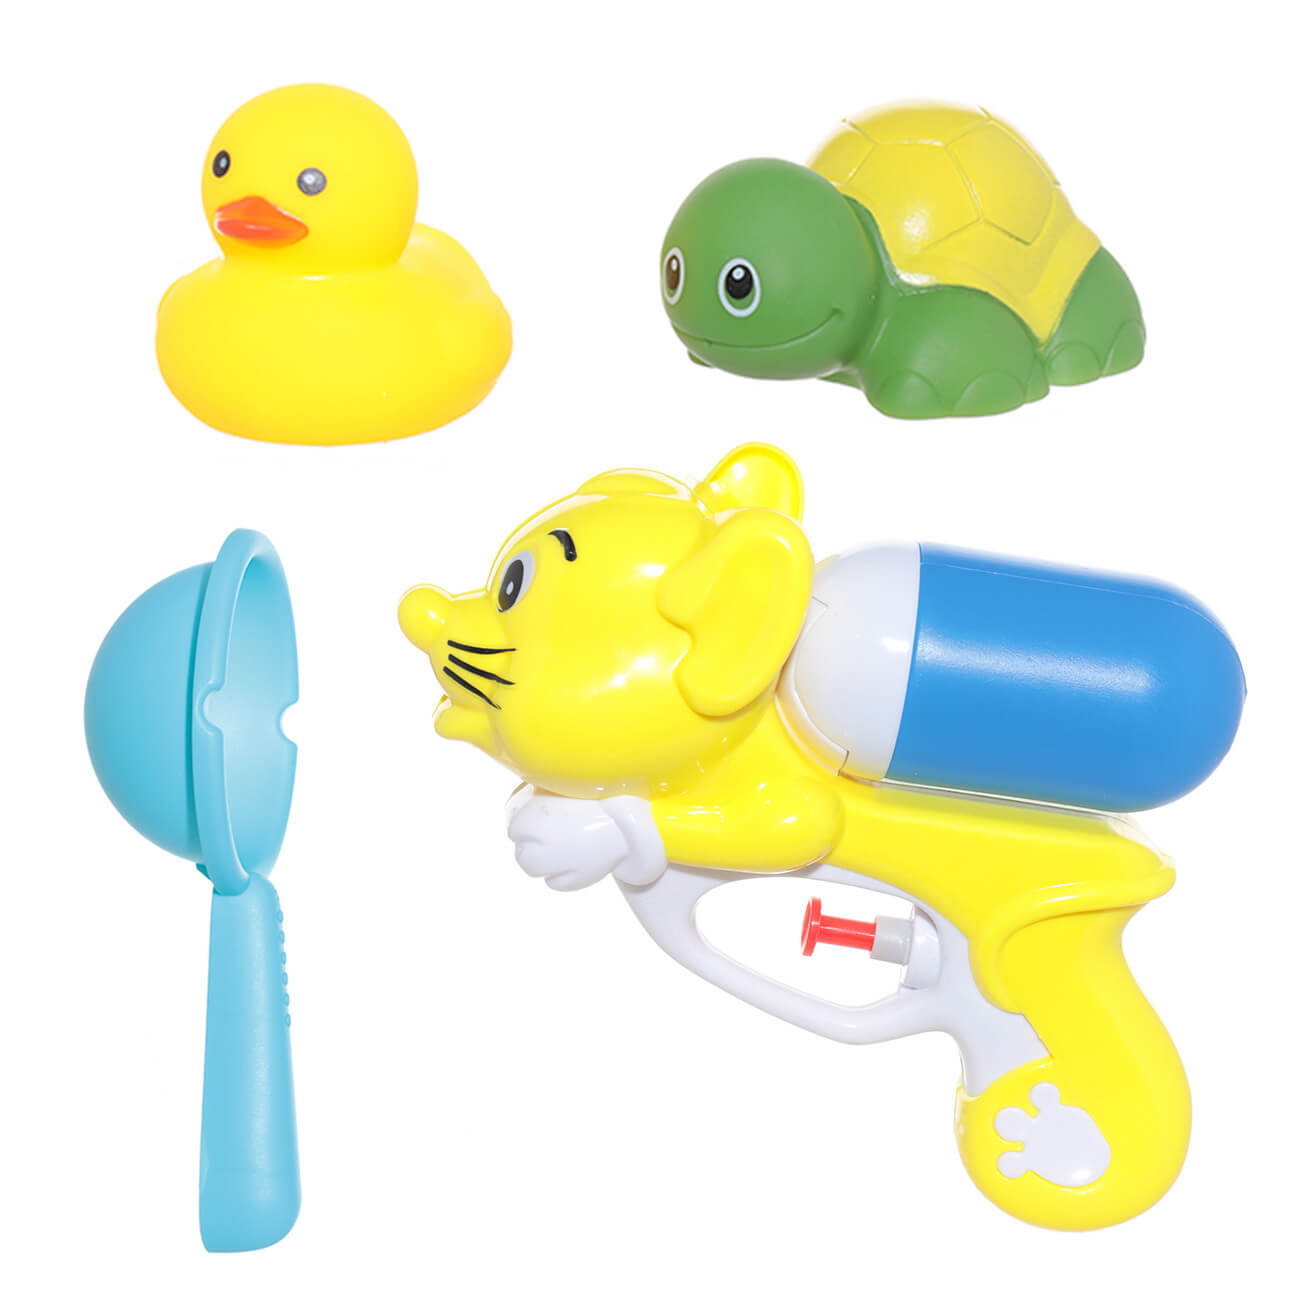 Набор игрушек для купания, 4 пр, водный пистолет/игрушки, резина/пластик, желтый, Duck набор игрушек для купания 6 пр сачок удочка игрушки пластик лягушка и рыбки game